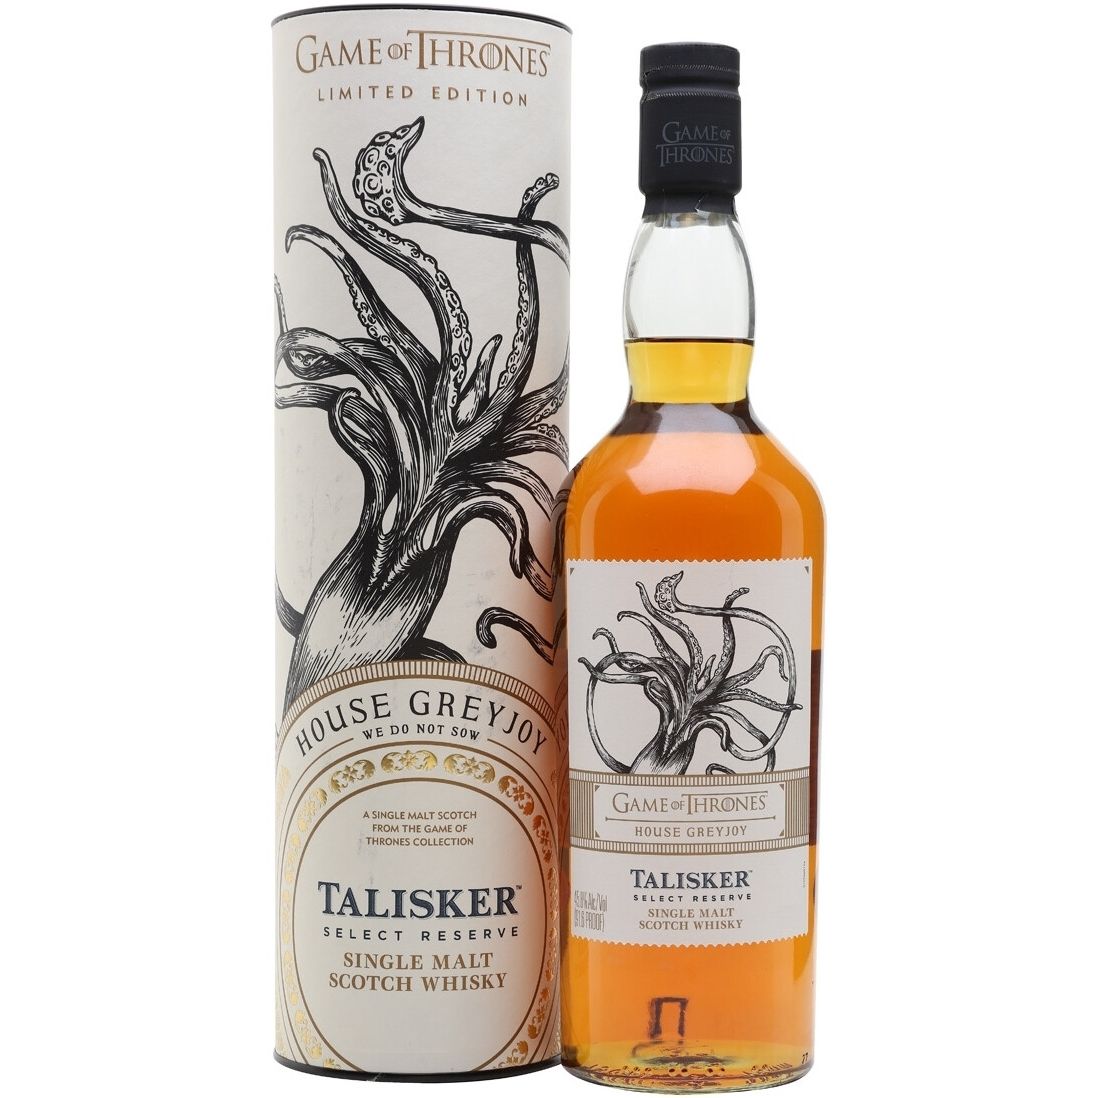 Виски Talisker Game of Thrones House Greyjoy Single Malt Scotch Whisky 45.8% 0.7 л, в подарочной упаковке - фото 1